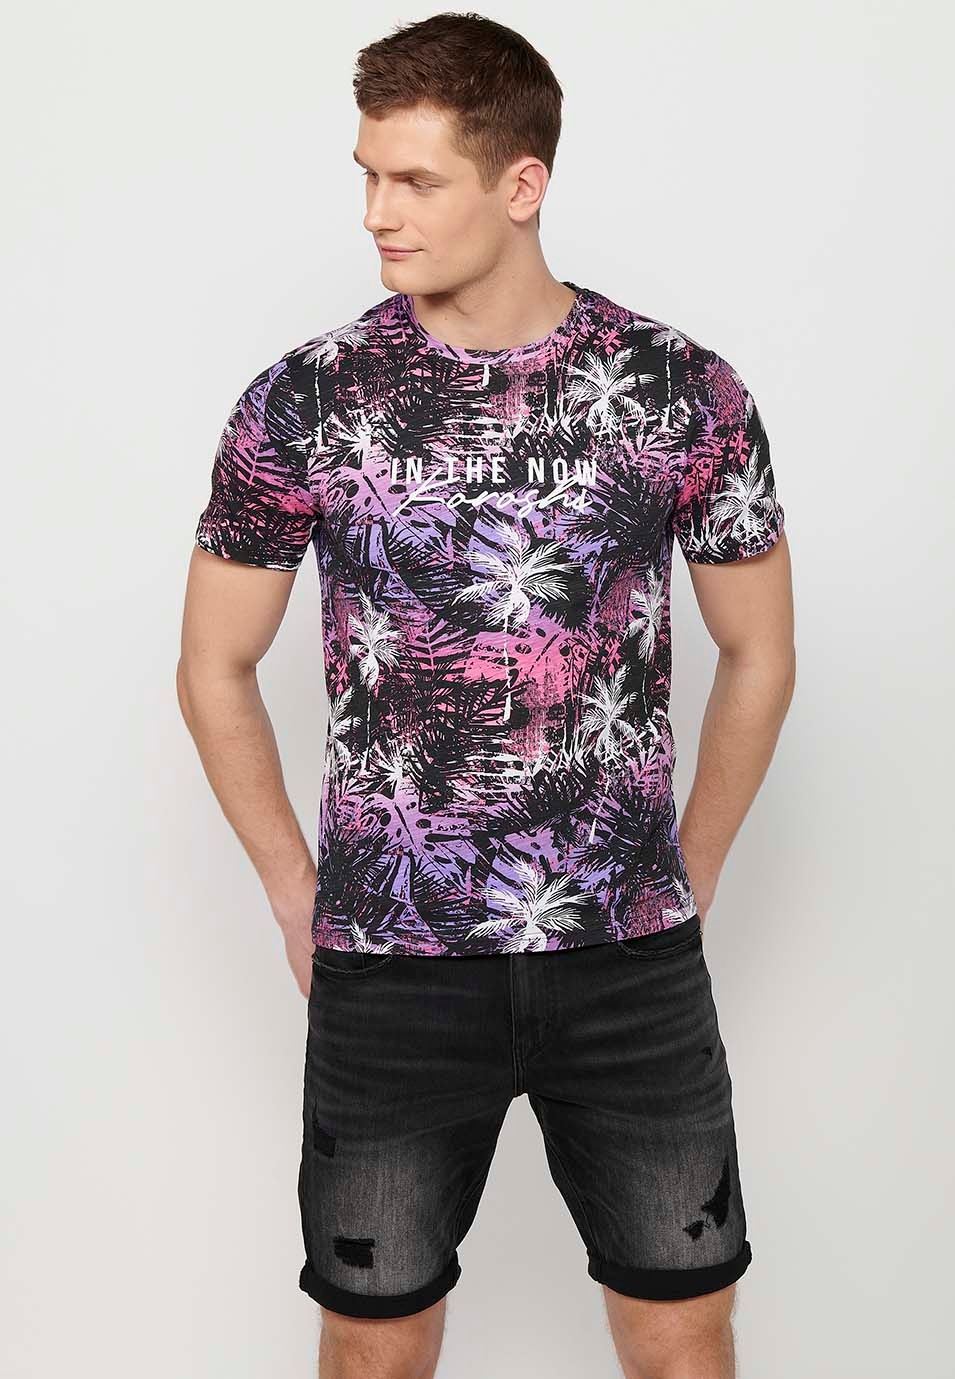 Camiseta manga corta de algodon con estampado tropical multicolor rosa morado para hombre